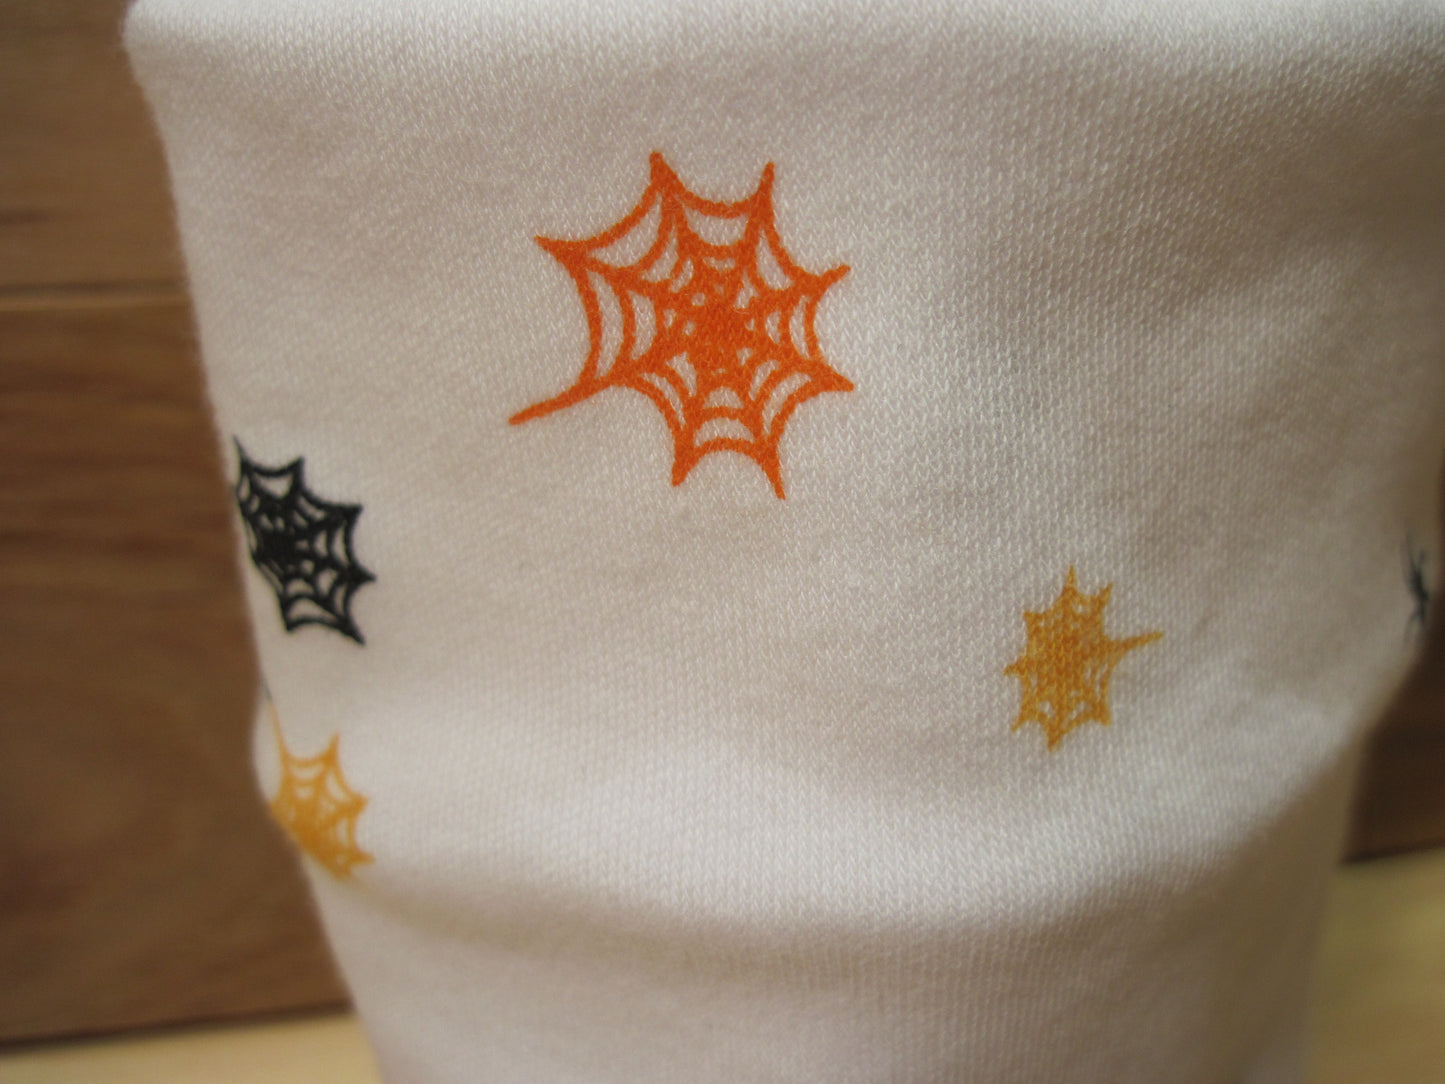 Skein/Yarn cozies ~ White w/ black bats, orange & black spider webs